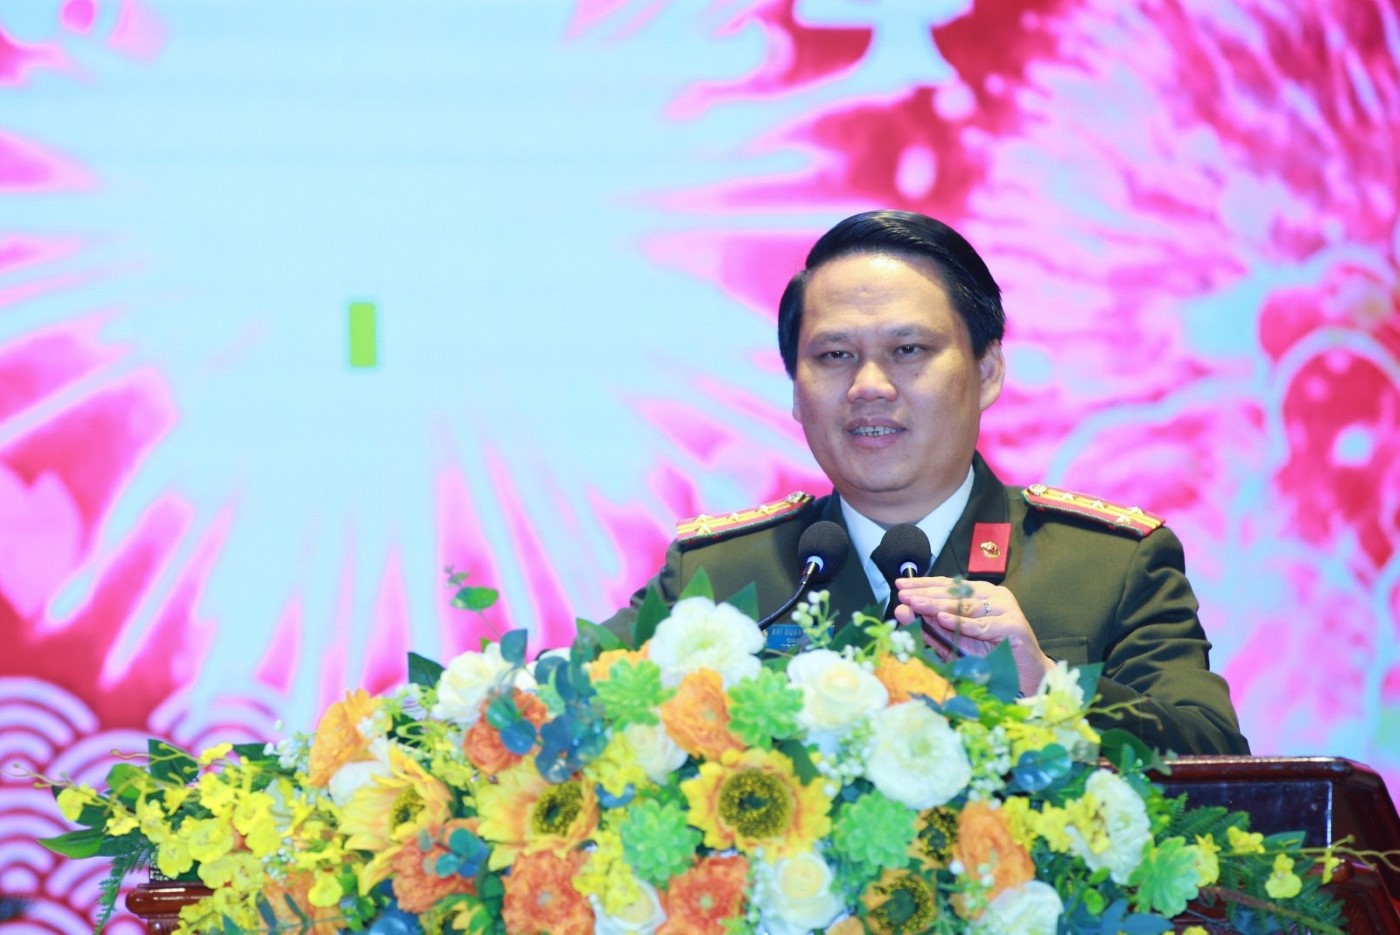 Đồng chí Đại tá Bùi Quang Thanh, Giám đốc Công an tỉnh chúc mừng năm mới đến toàn thể cán bộ, chiến sỹ và gia đình năm mới sức khỏe, hạnh phúc, an khang thịnh vượng